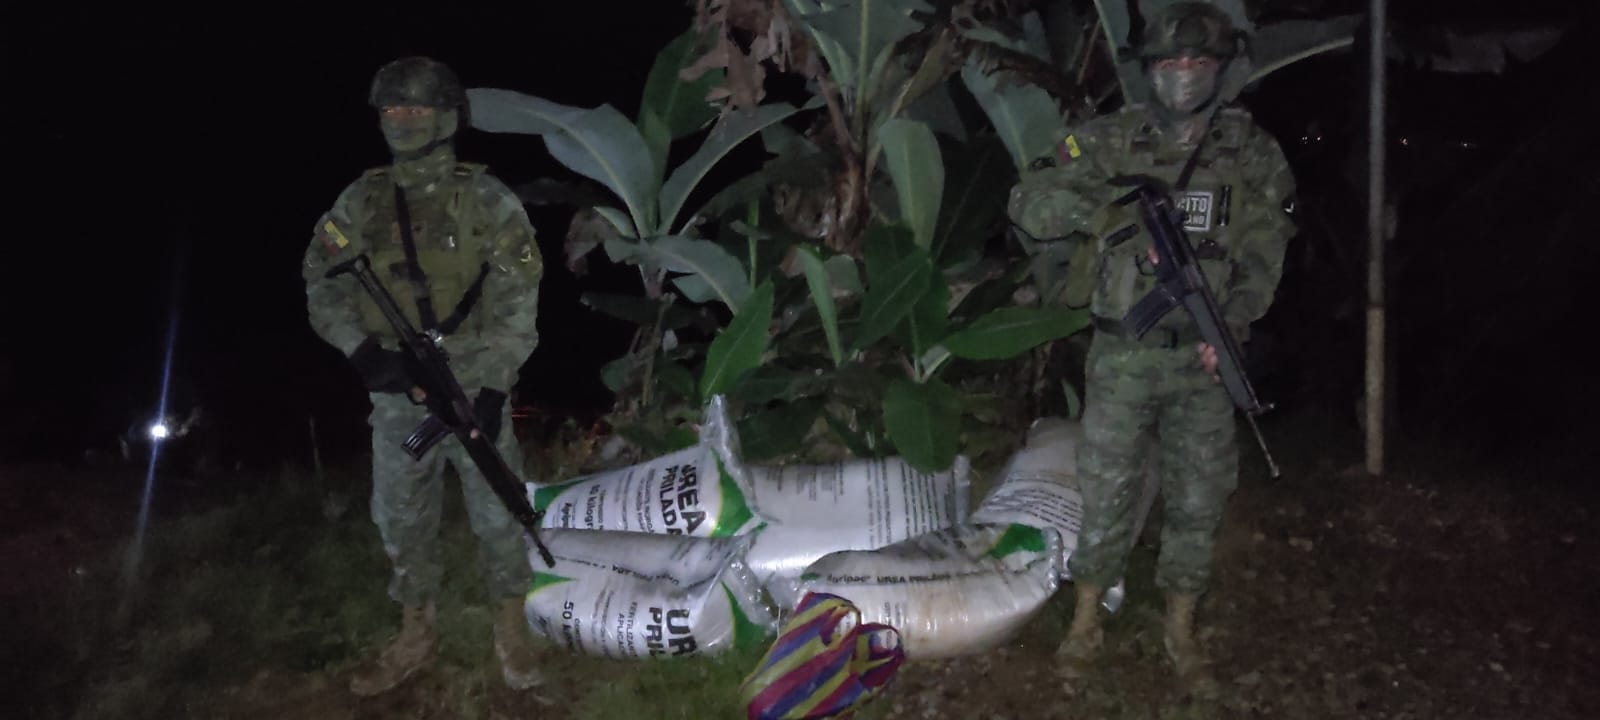 En este momento estás viendo Decomiso de Material Explosivo por Parte de las Fuerzas Armadas del Ecuador en el Sector de Chinapintza